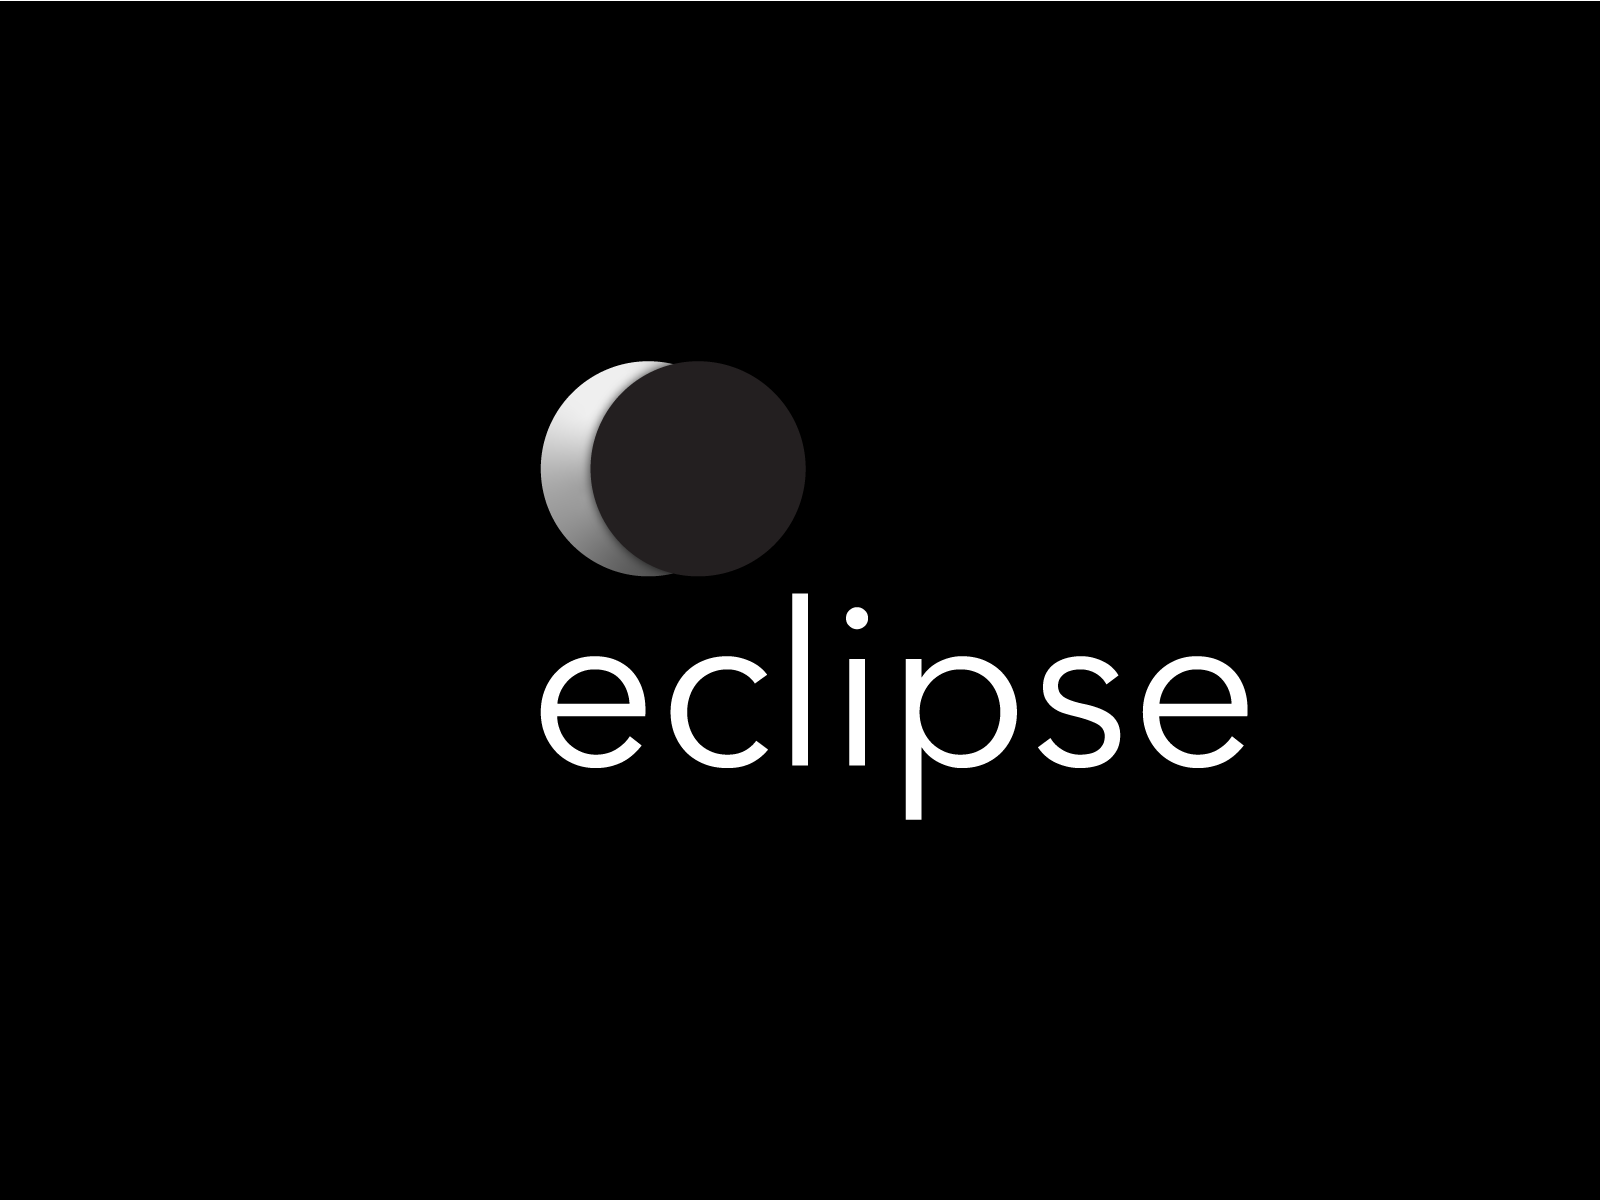 Eclipse Logo by Ghaffar Sethar on Dribbble